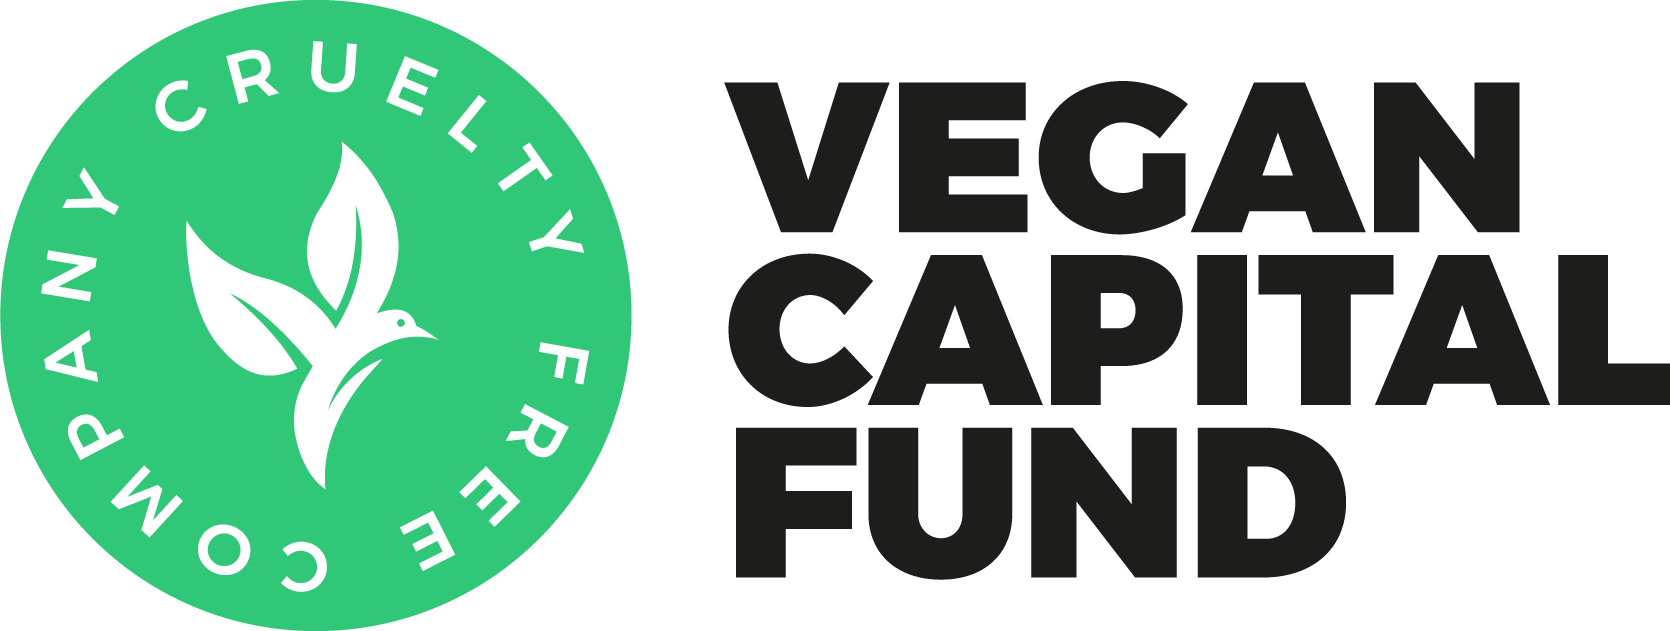 Vegan Capital Fund